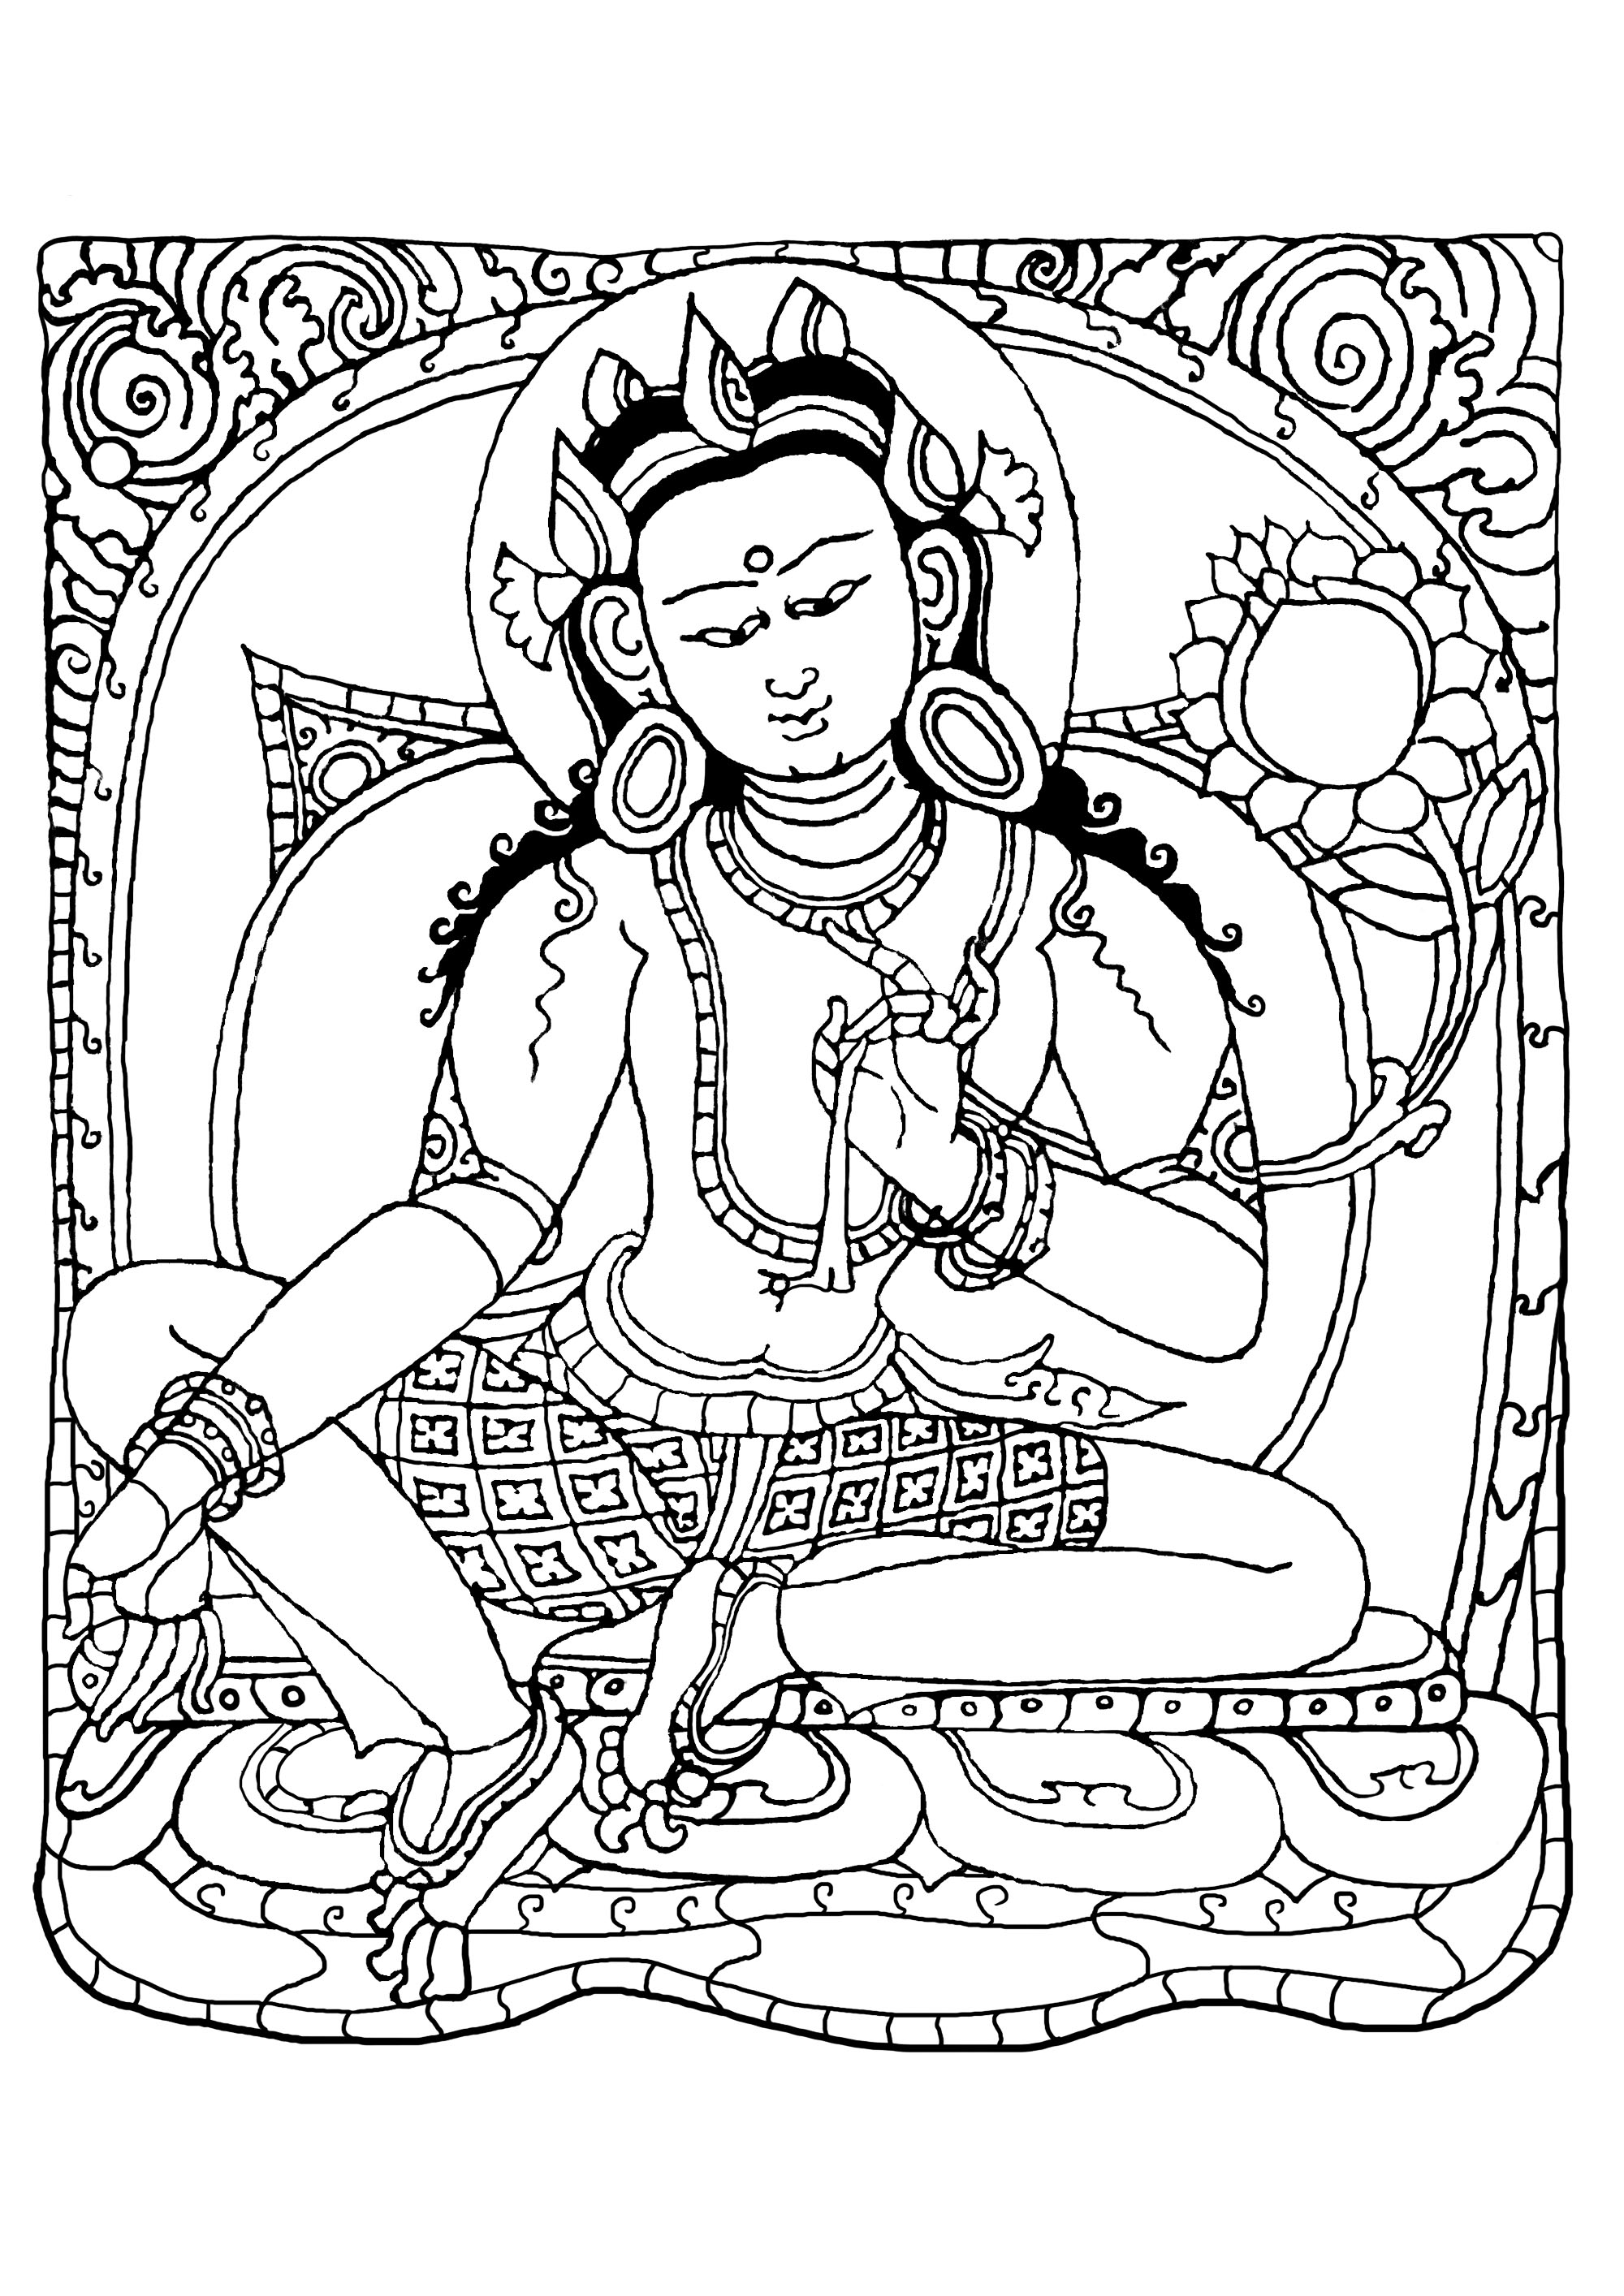 Pagina da colorare ispirata a un disegno (in rame con doratura e pittura) che rappresenta Buddha Shakyamuni. È stato realizzato da artigiani nepalesi, tra il 1500 e il 1600. Forse è stato realizzato e commissionato in Tibet.